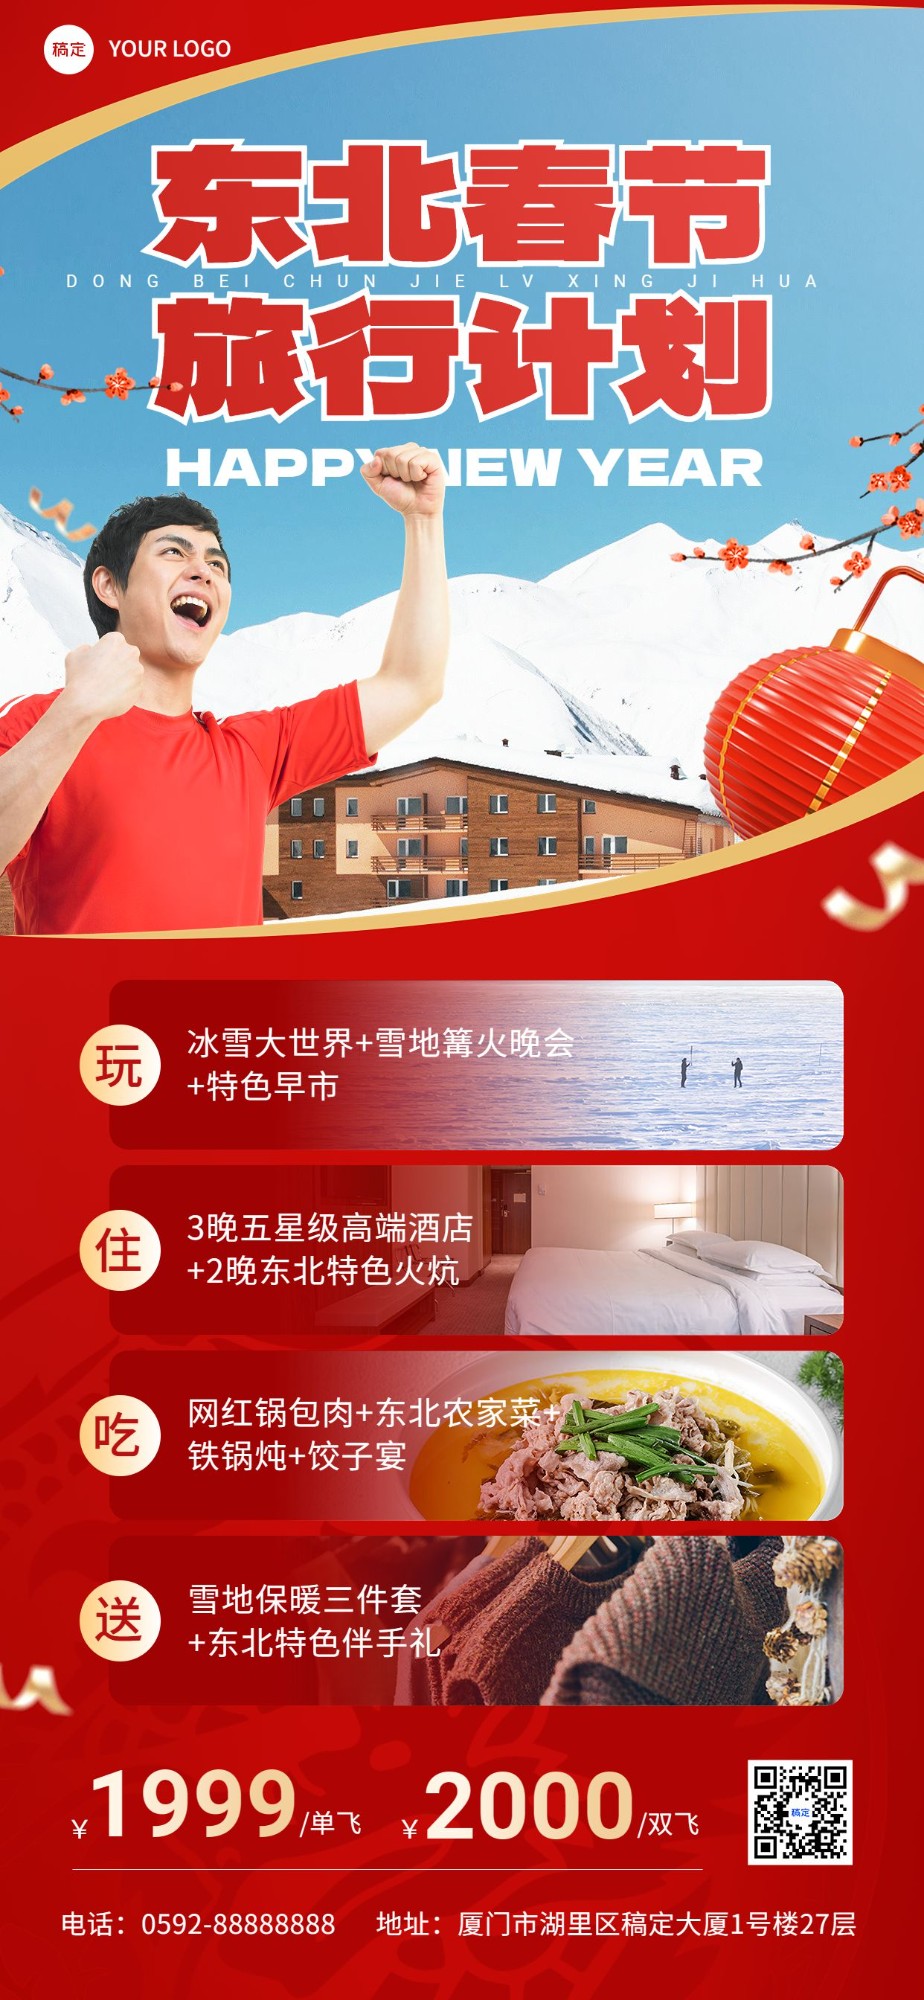 旅游出行春节旅行社东北旅游线路营销宣传全屏竖版海报预览效果